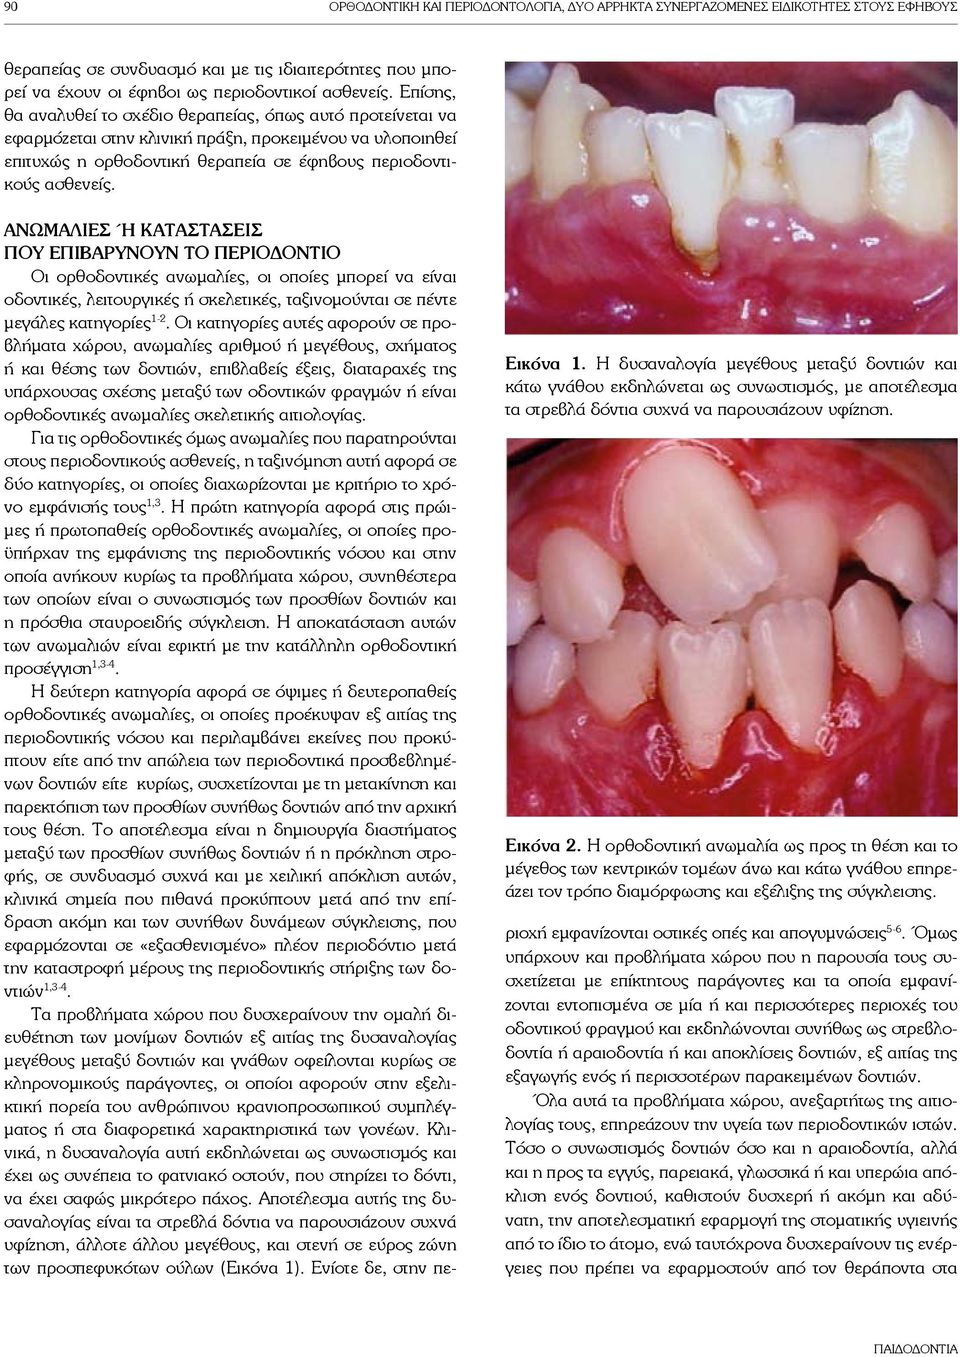 Εικόνα 1. Η δυσαναλογία μεγέθους μεταξύ δοντιών και κάτω γνάθου εκδηλώνεται ως συνωστισμός, με αποτέλεσμα τα στρεβλά δόντια συχνά να παρουσιάζουν υφίζηση. Εικόνα 2.